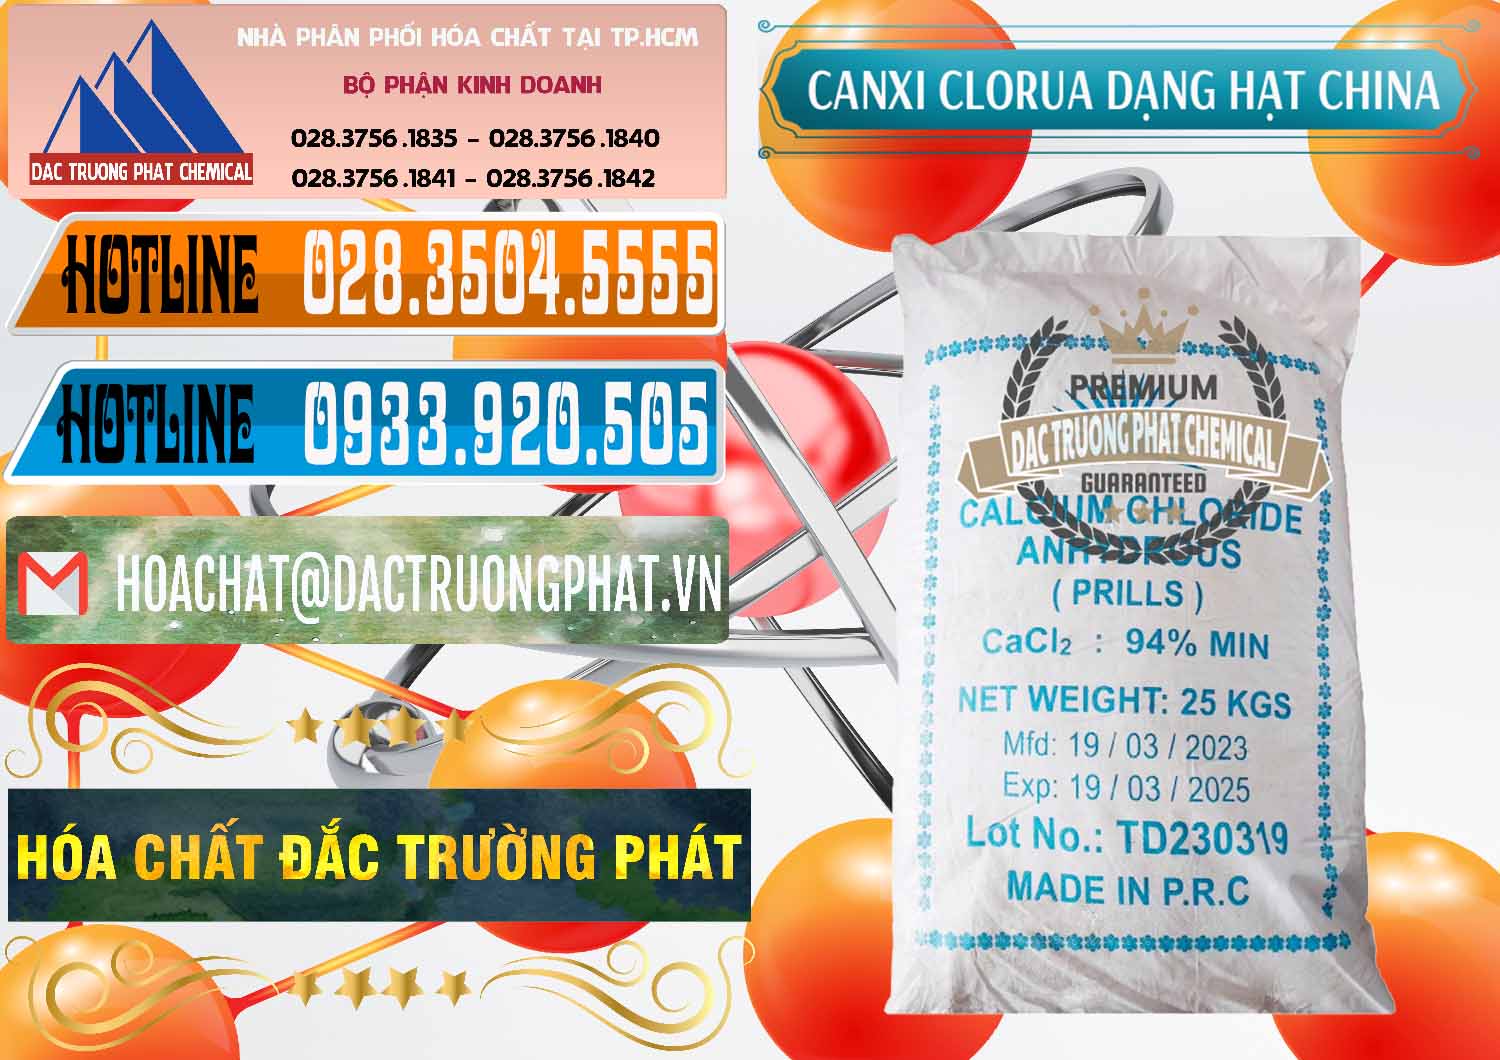 Nơi cung ứng _ bán CaCl2 – Canxi Clorua 94% Dạng Hạt Trung Quốc China - 0373 - Chuyên cung cấp & phân phối hóa chất tại TP.HCM - stmp.net